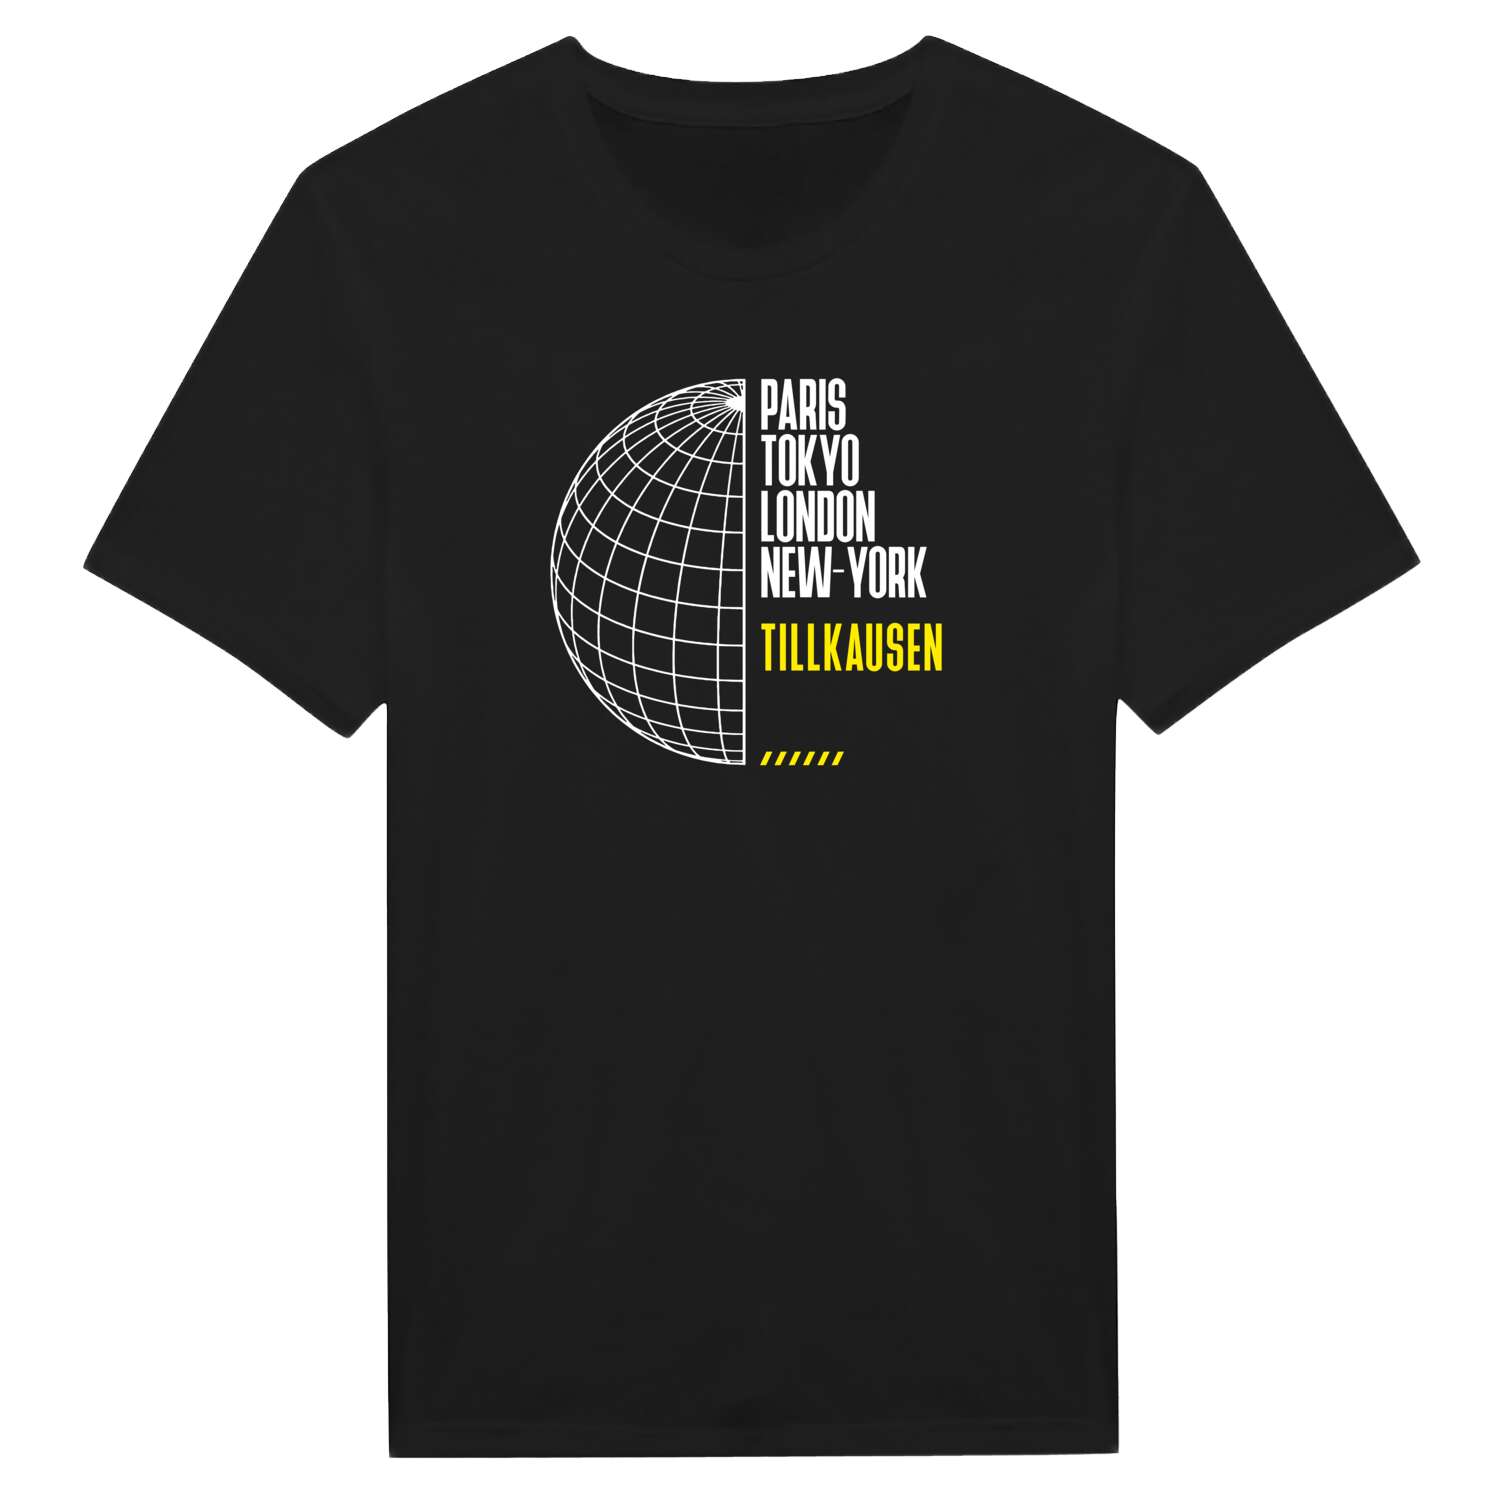 Tillkausen T-Shirt »Paris Tokyo London«